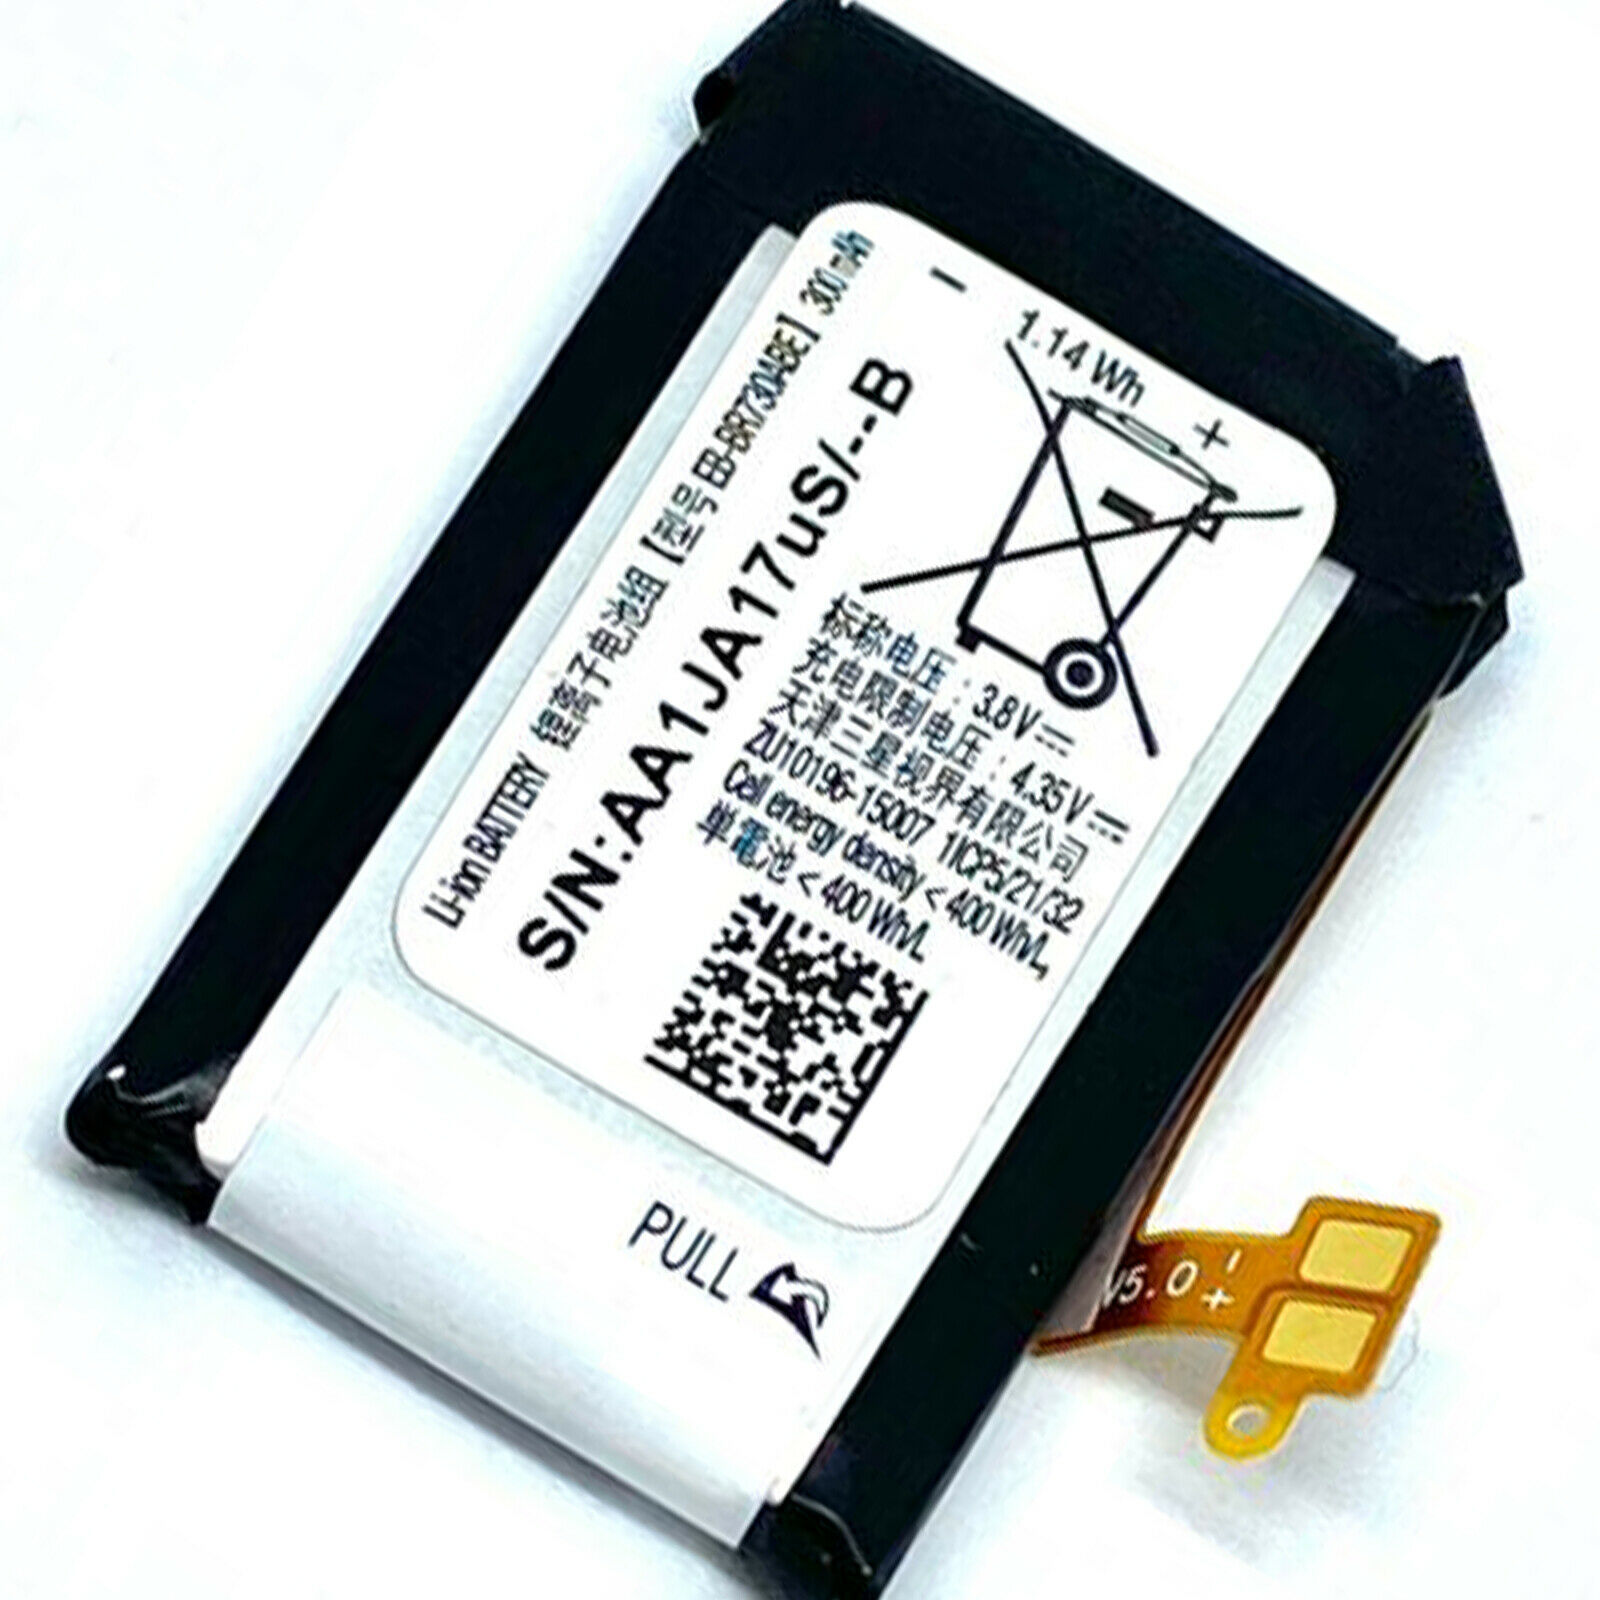 SAMSUNG EB-BR730ABE FOR GEAR SPORT SM-R600 GEAR S2 SM-R730A/R735A 300mAh (kompatibelt batteri)